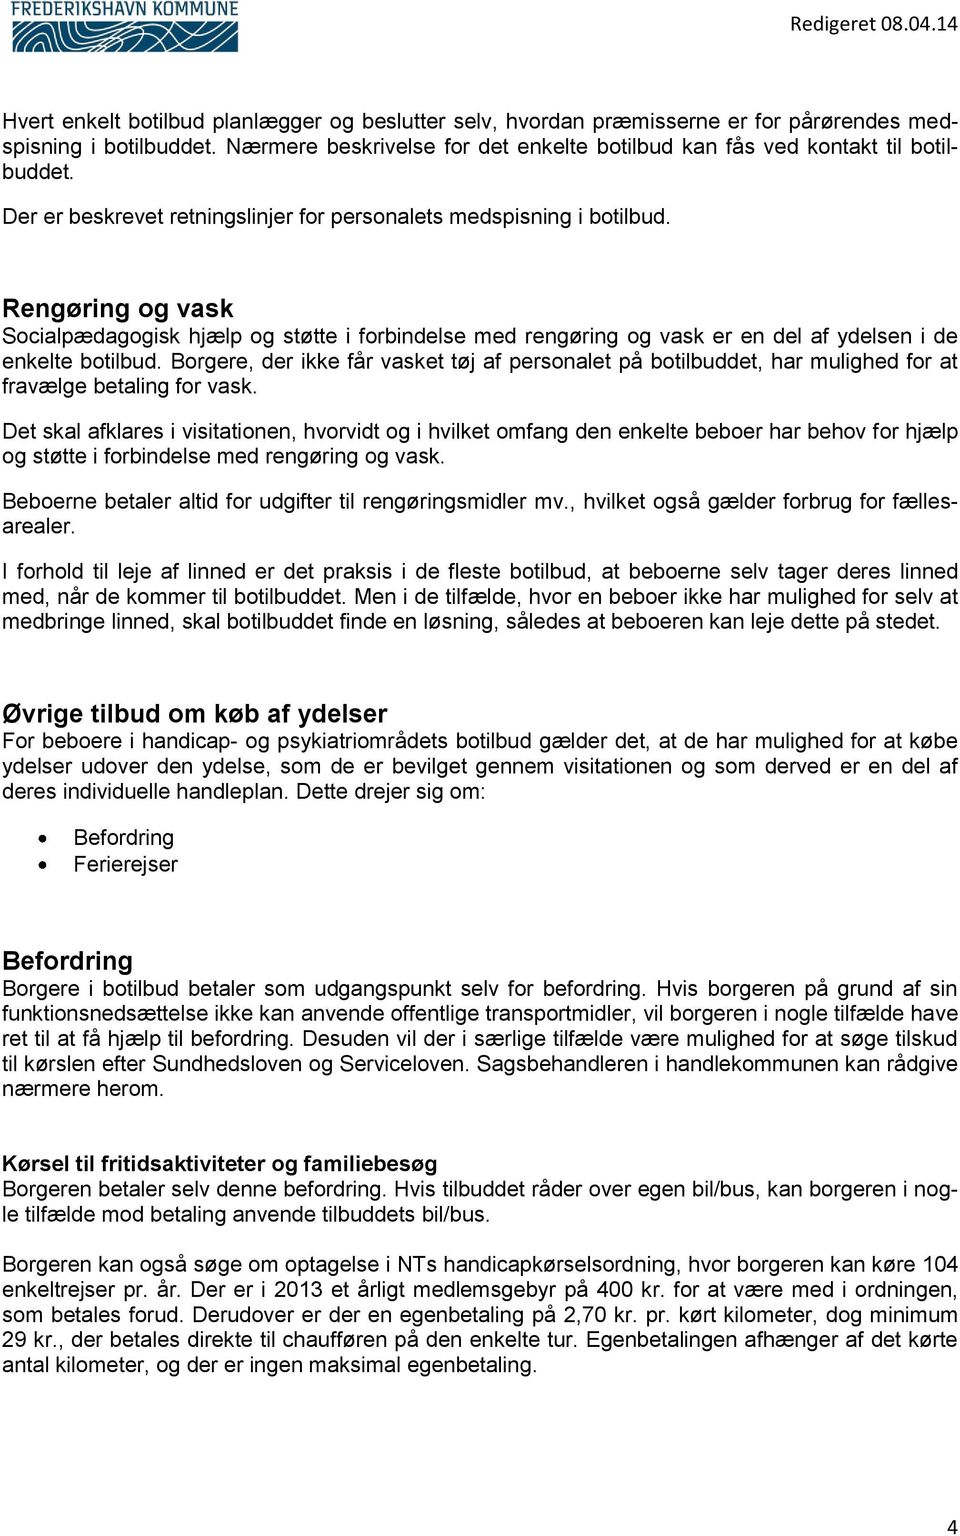 Serviceniveau for brugerbetaling for voksne i botilbud på handicap og  psykiatriområdet i Frederikshavn Kommune - PDF Gratis download